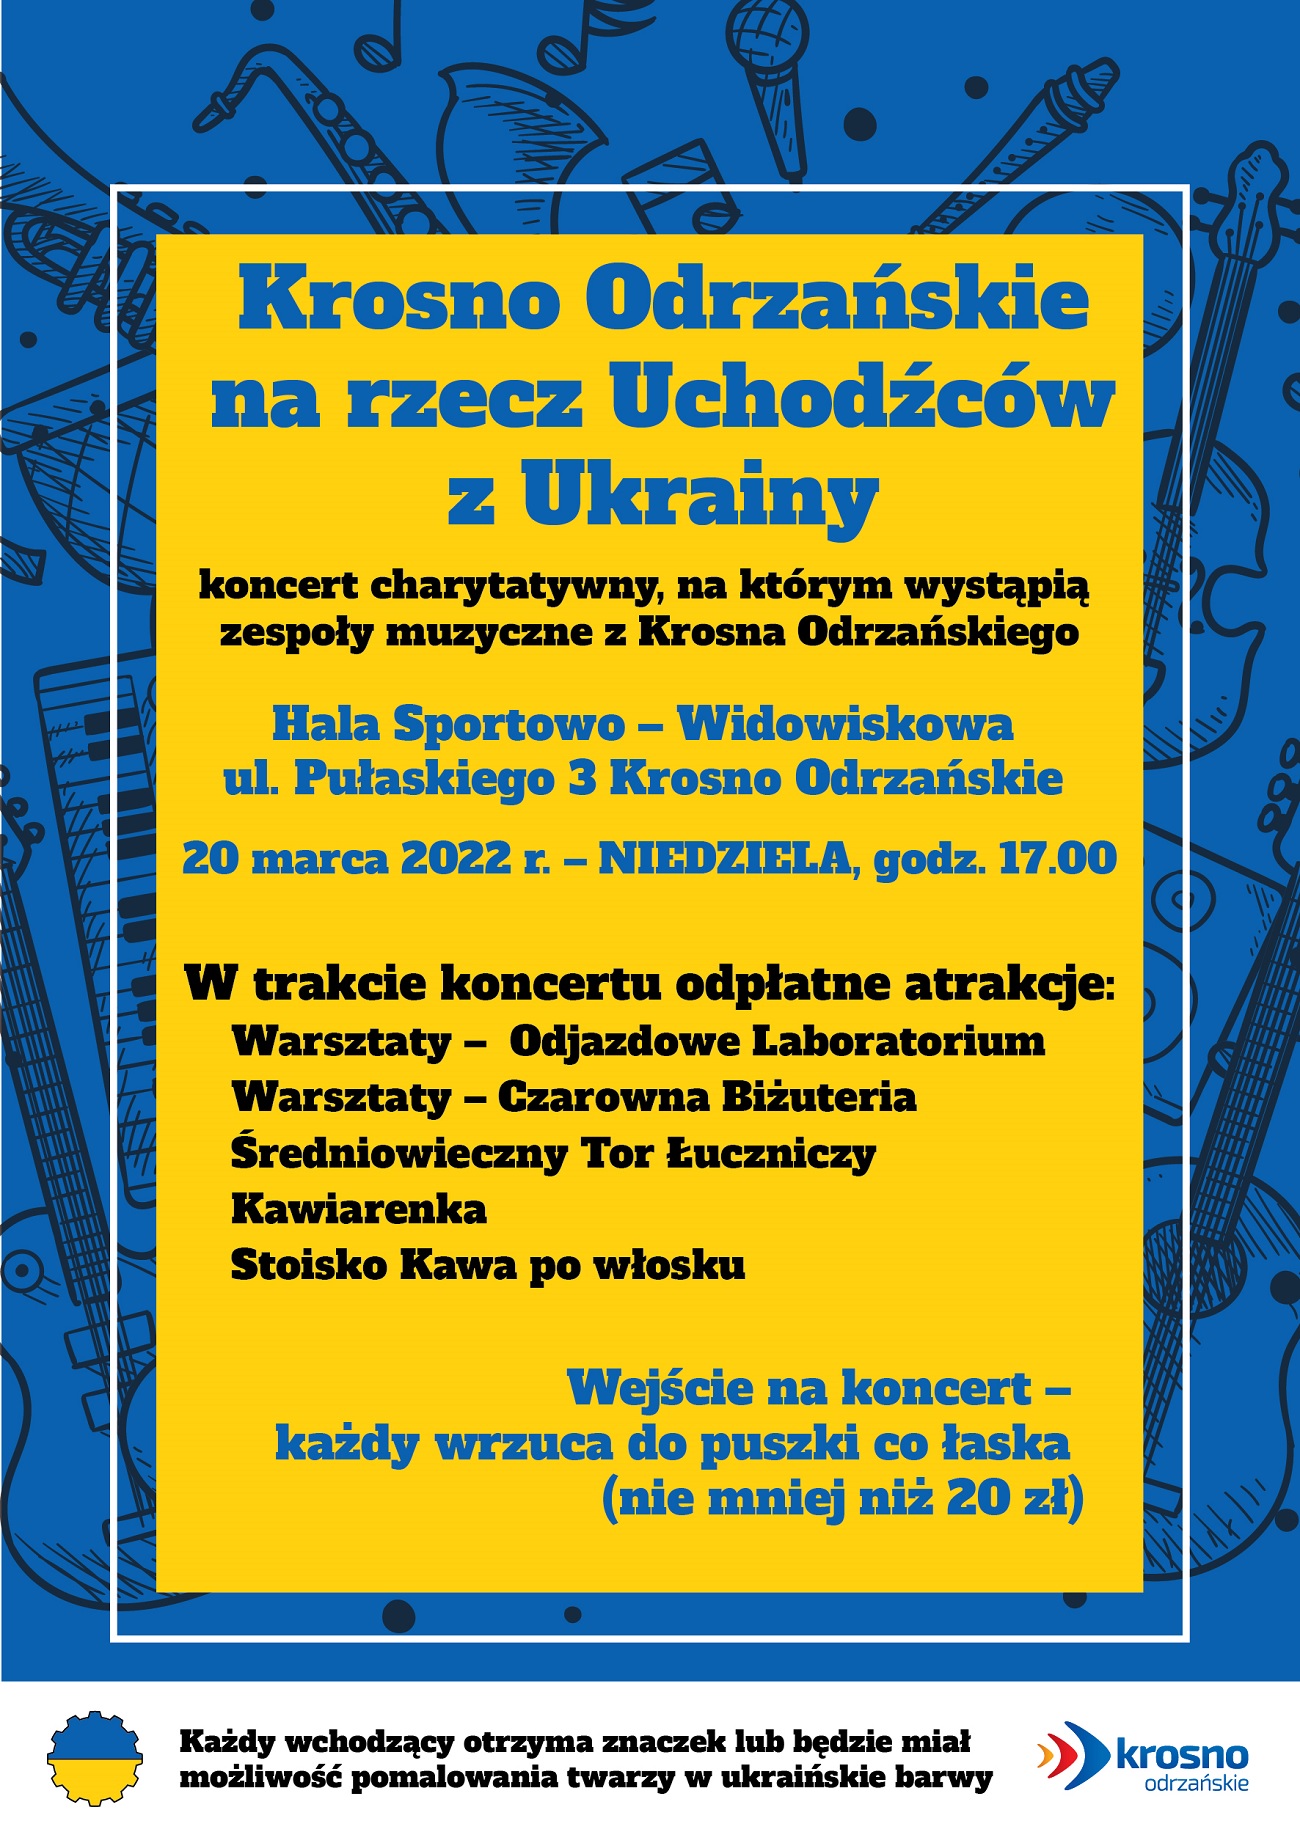 W niedzielę, 20 marca o 17.00 w Hali Sportowo – Widowiskowej rozpocznie się koncert charytatywny, z którego dochód przeznaczony będzie na pomoc uchodźcom wojennym z Ukrainy. Zapraszamy do udział.